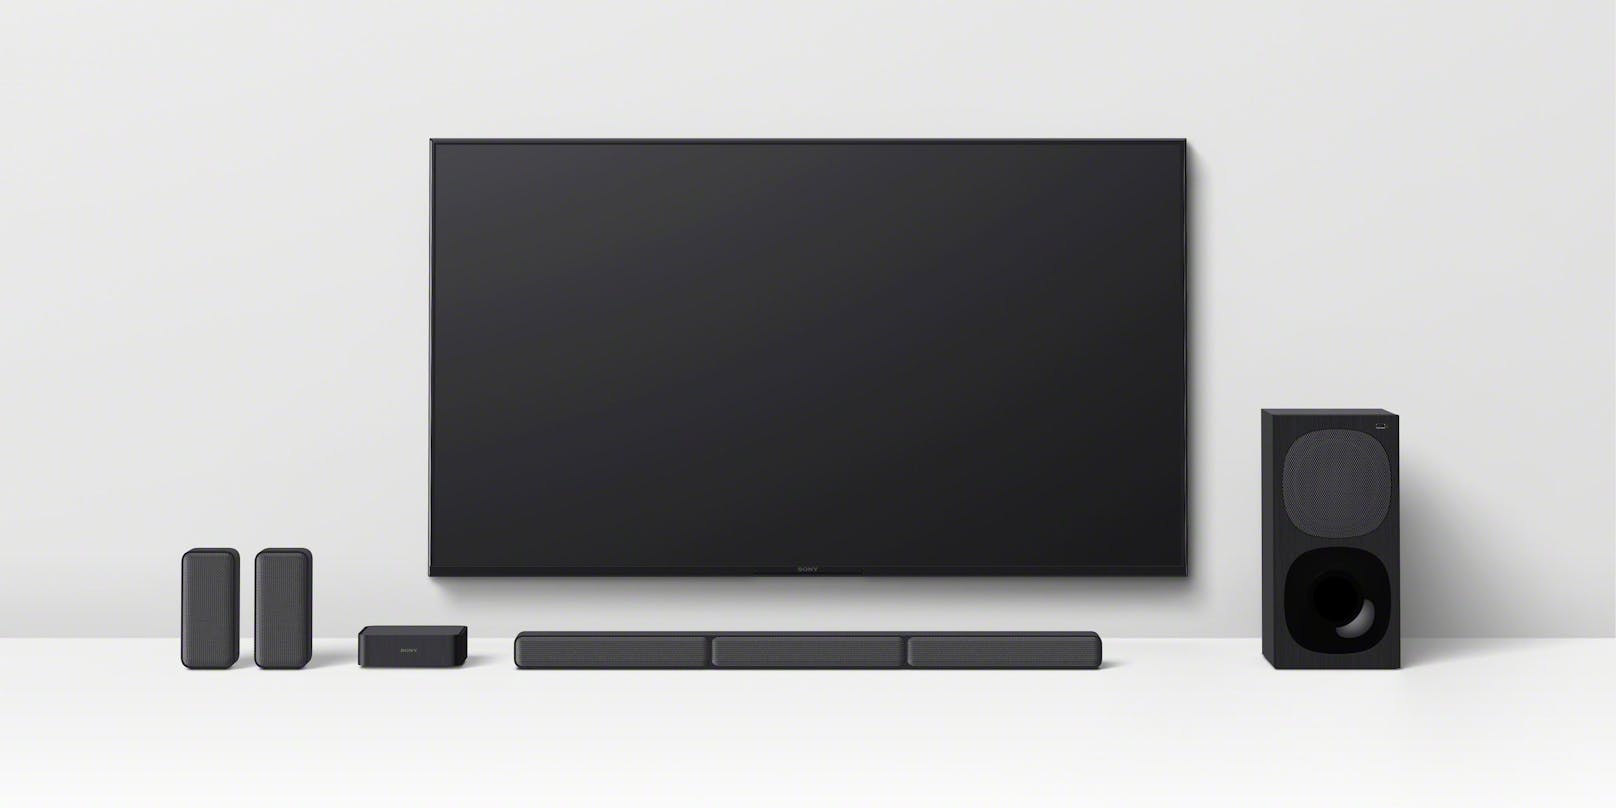 Das neue 5.1-Kanal-Heimkino-Soundbar-System HT-S40R von Sony bringt starken Surround-Sound.